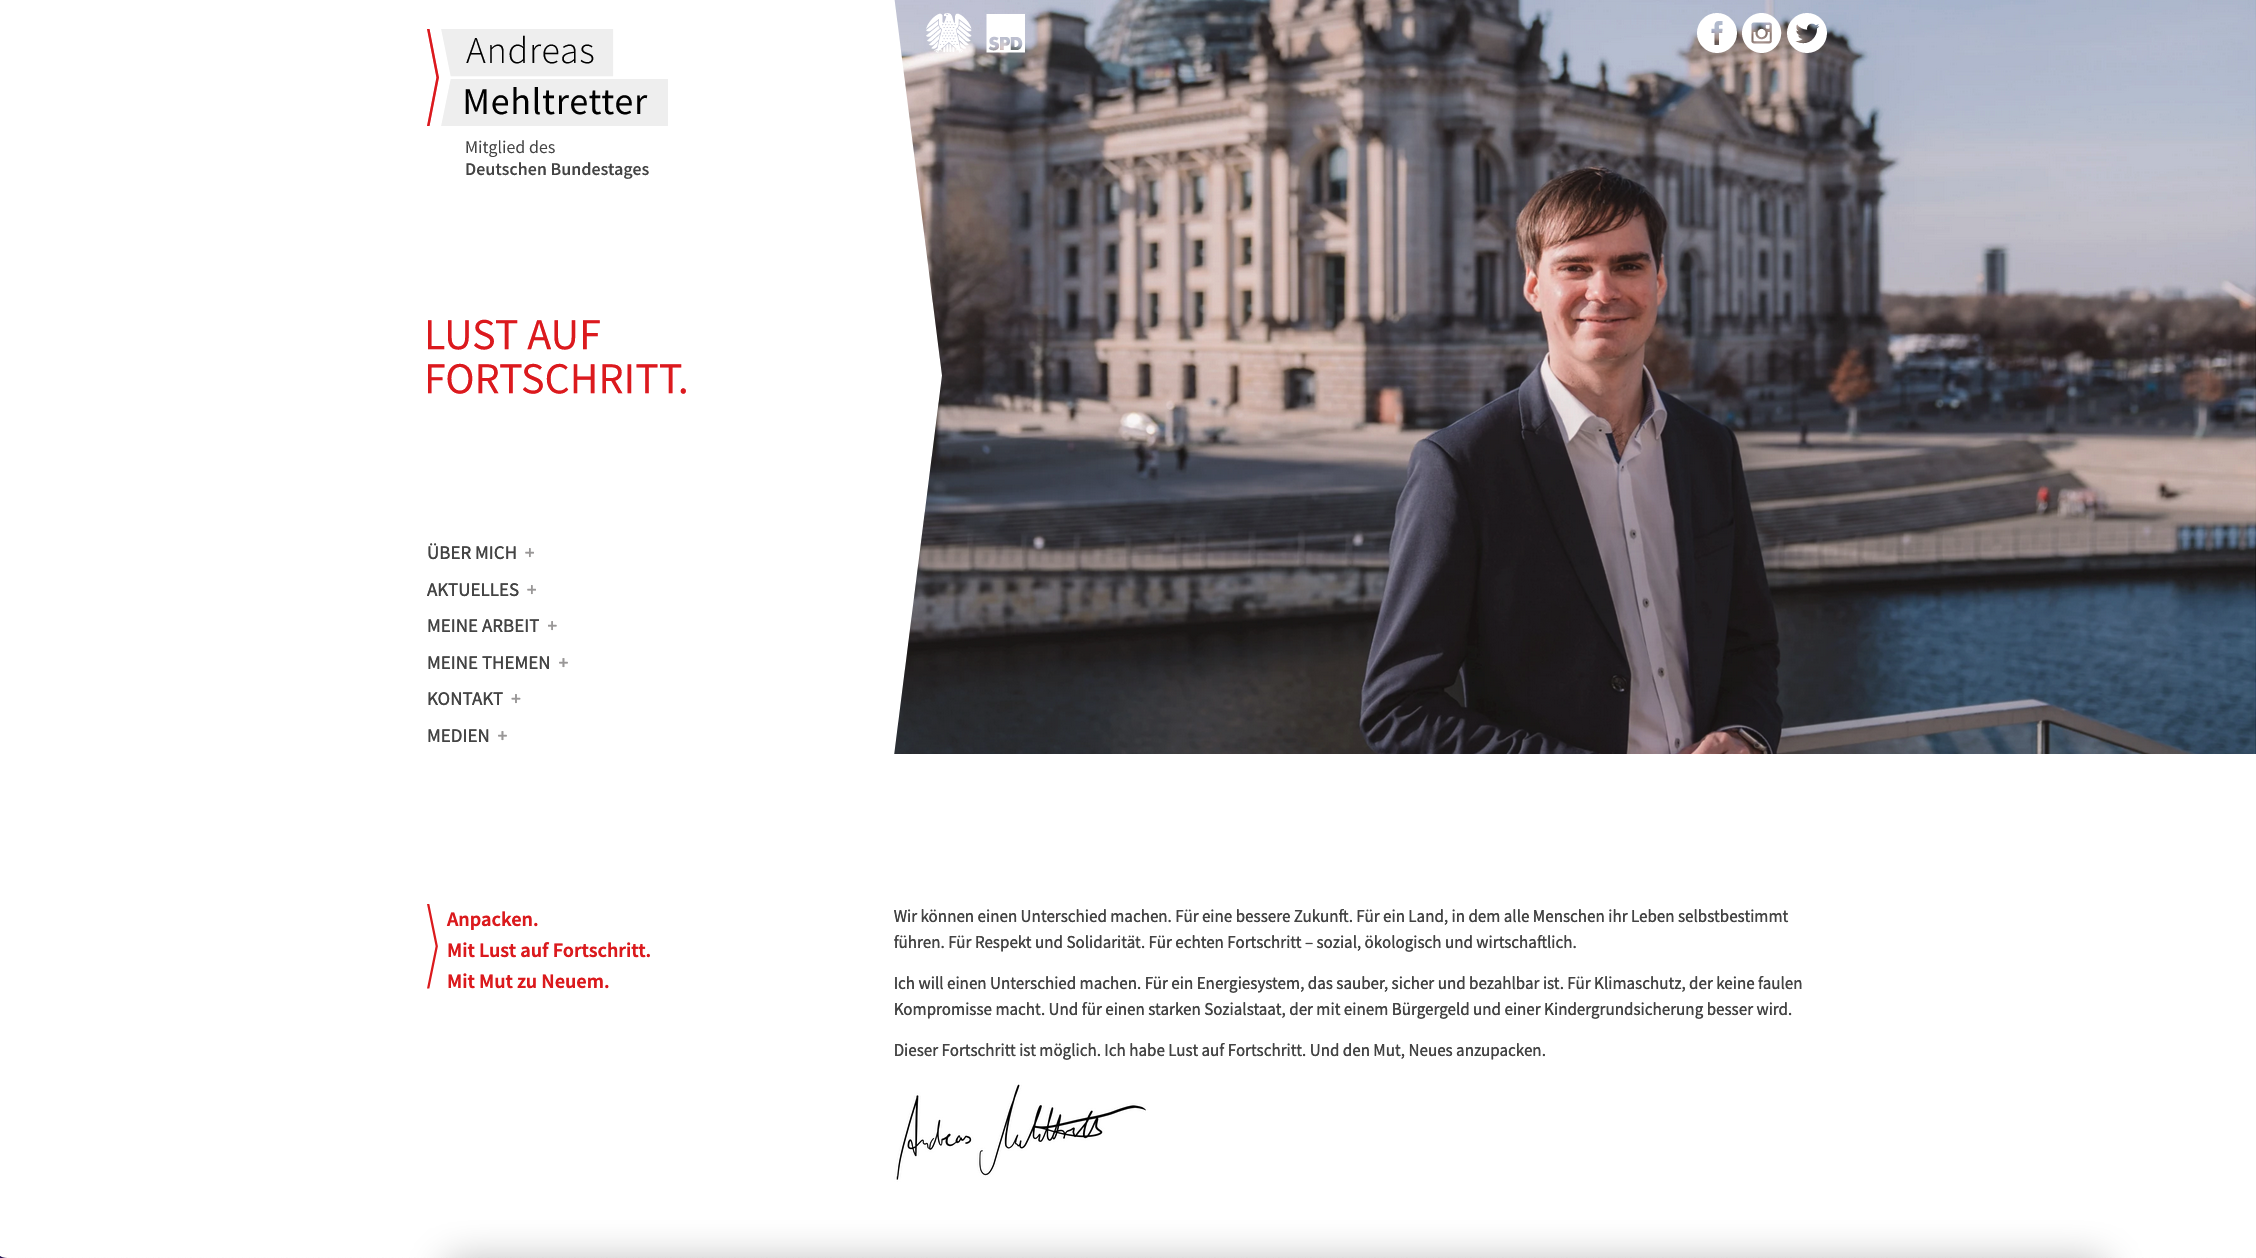 Andreas Mehltretter – Mitglied des Deutschen Bundestages